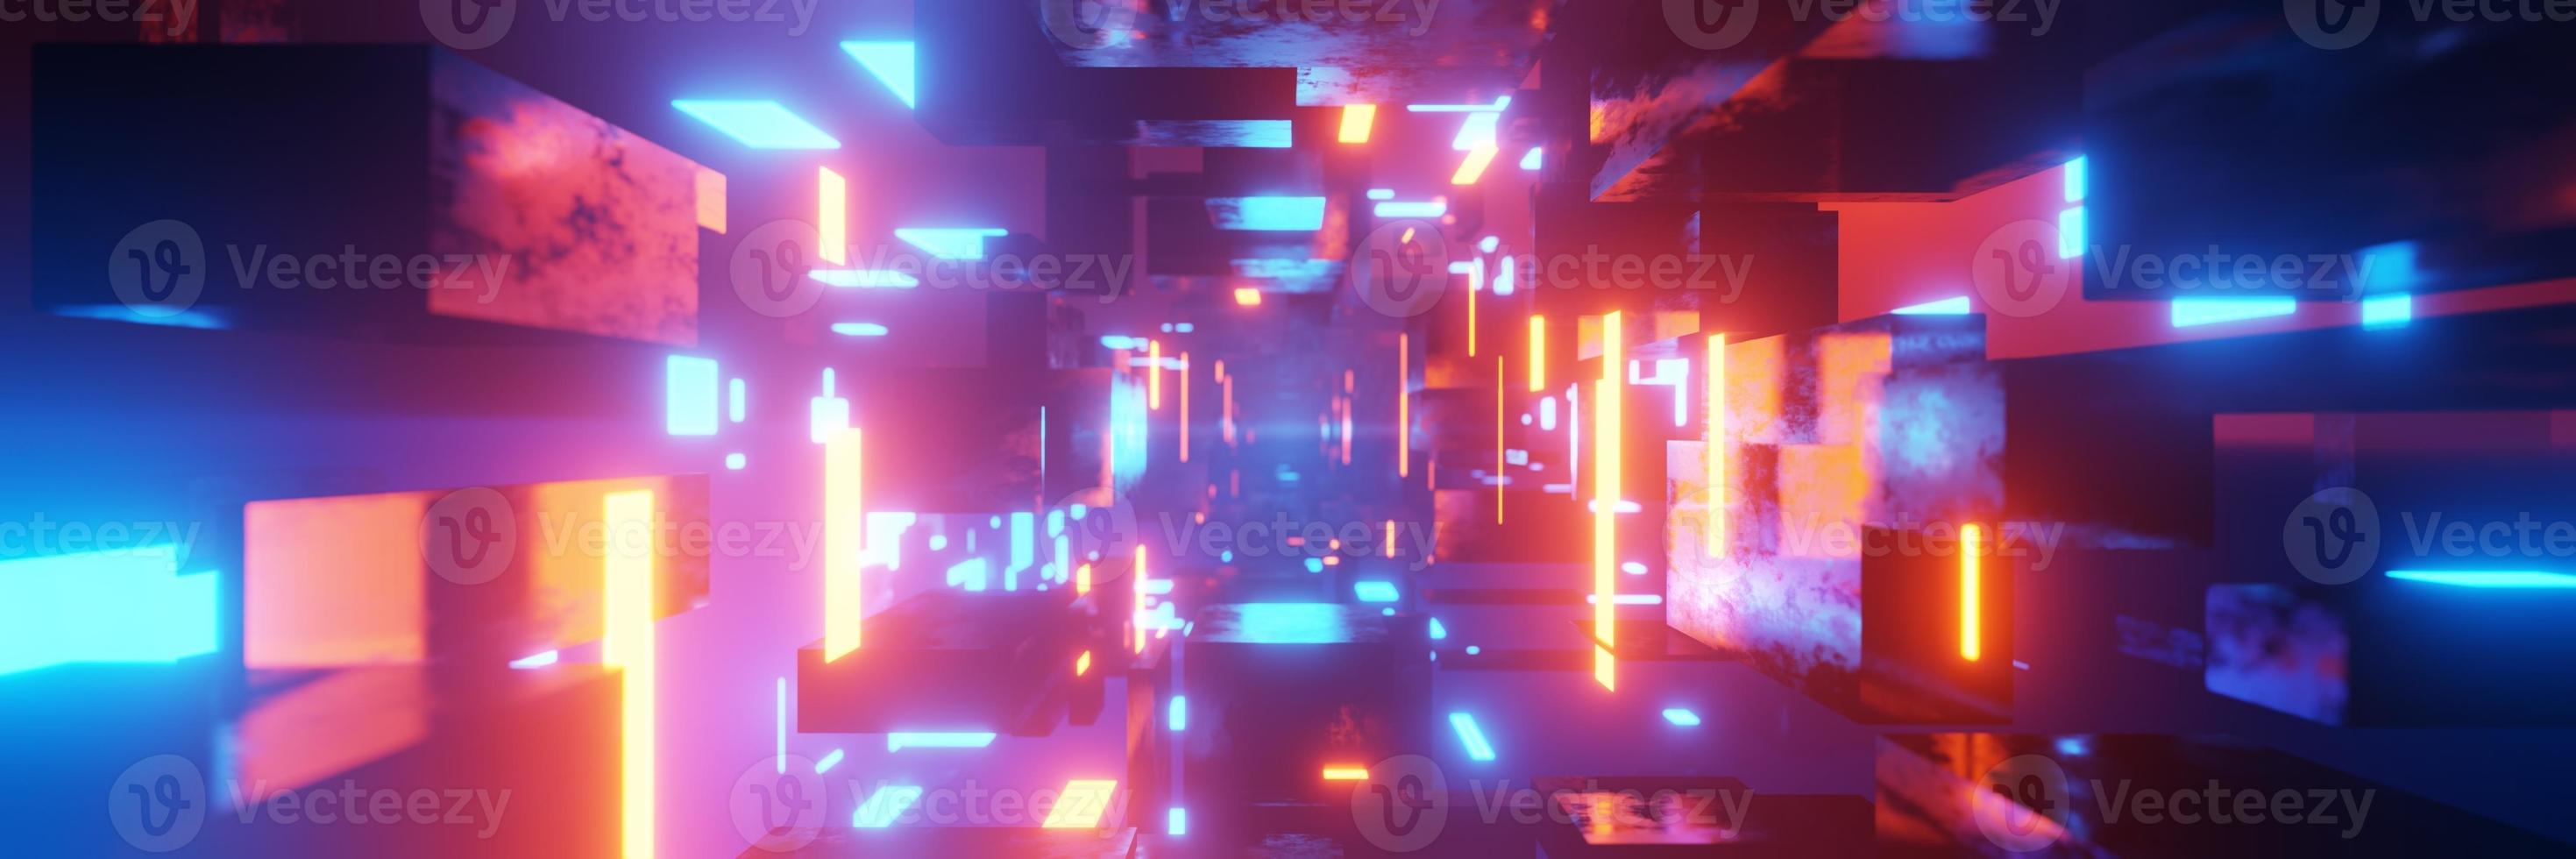 abstrakter futuristischer Tunnellaserwürfel geometrischer Cyberspace-Wurmloch-Cyberpunk-Hintergrund 3D-Rendering foto